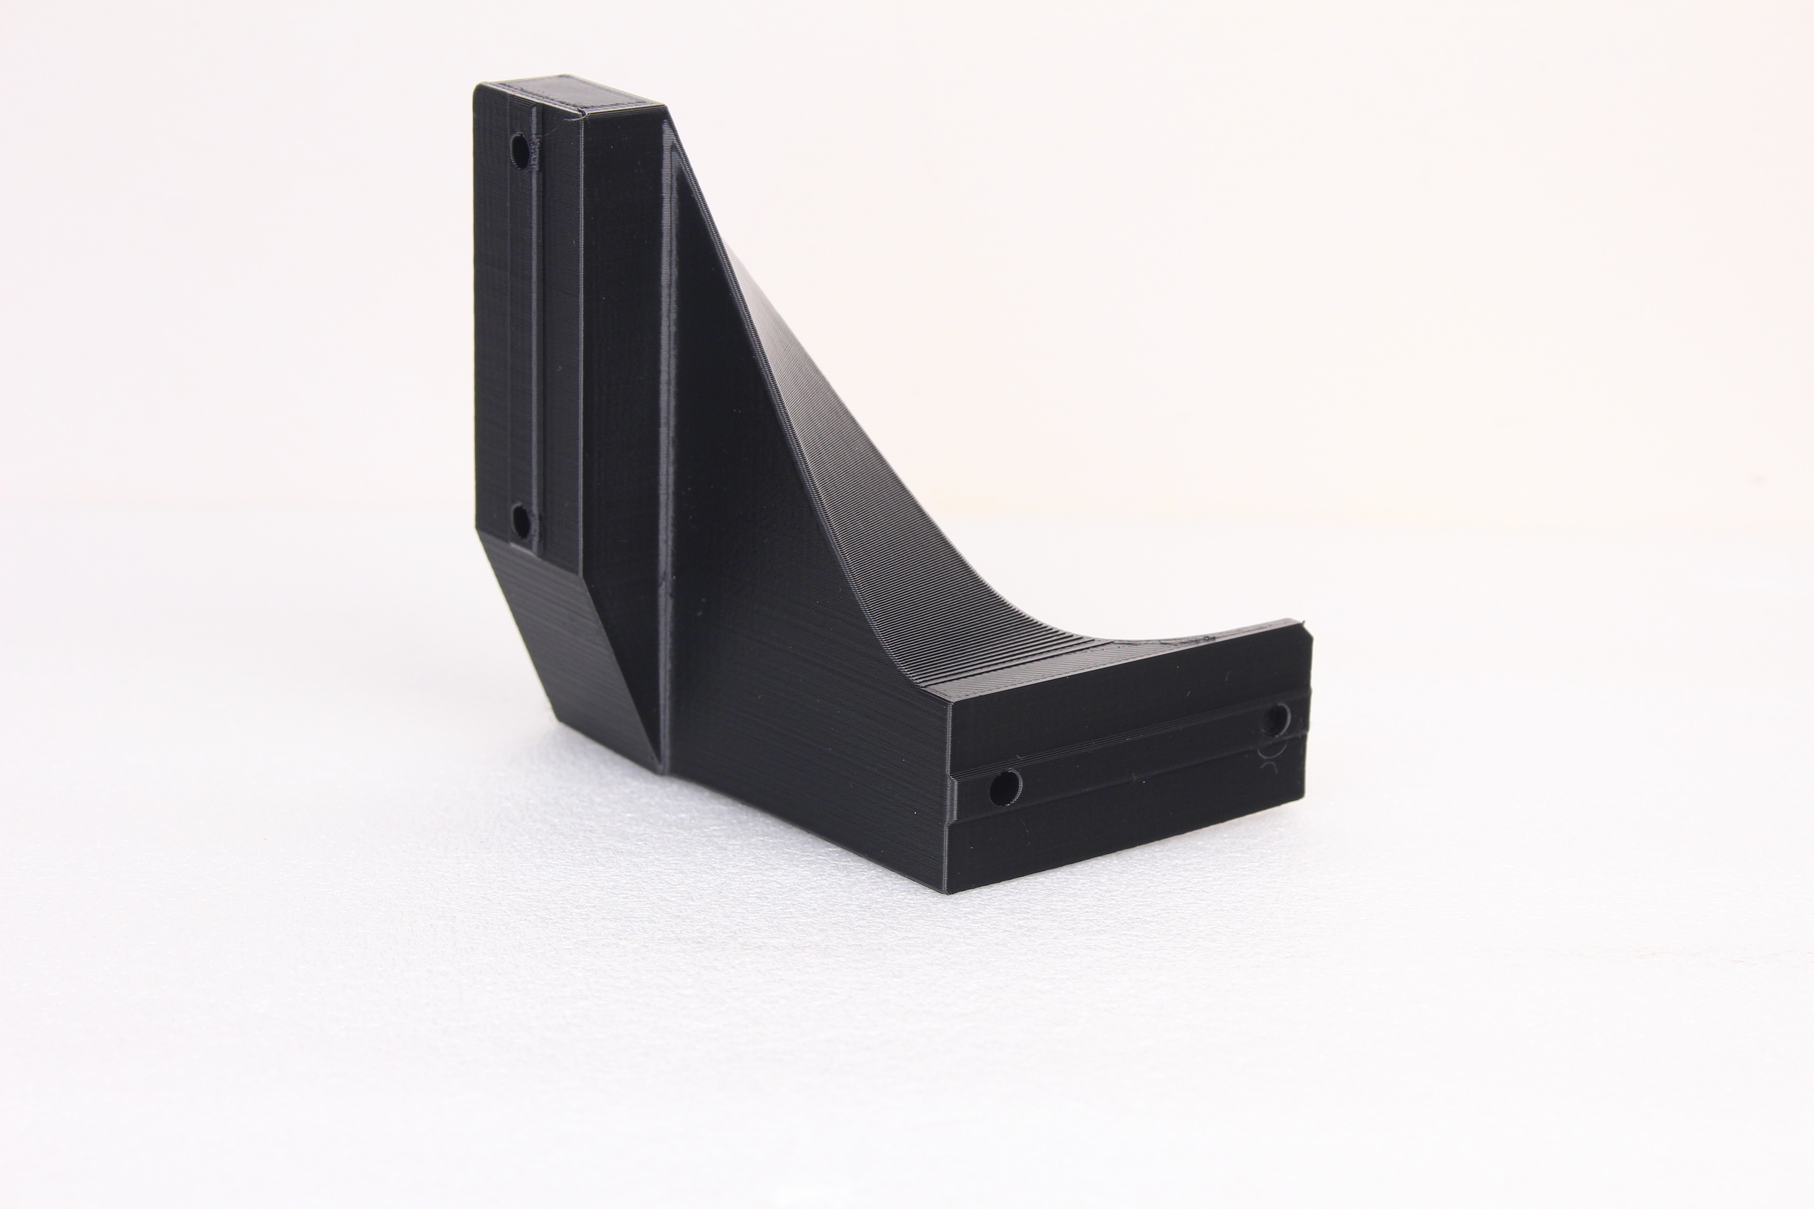 Prusa Mini brace pritned on RatRig V Core 3 in PETG 3 | RatRig V-Core 3 Review: Premium CoreXY 3D Printer Kit